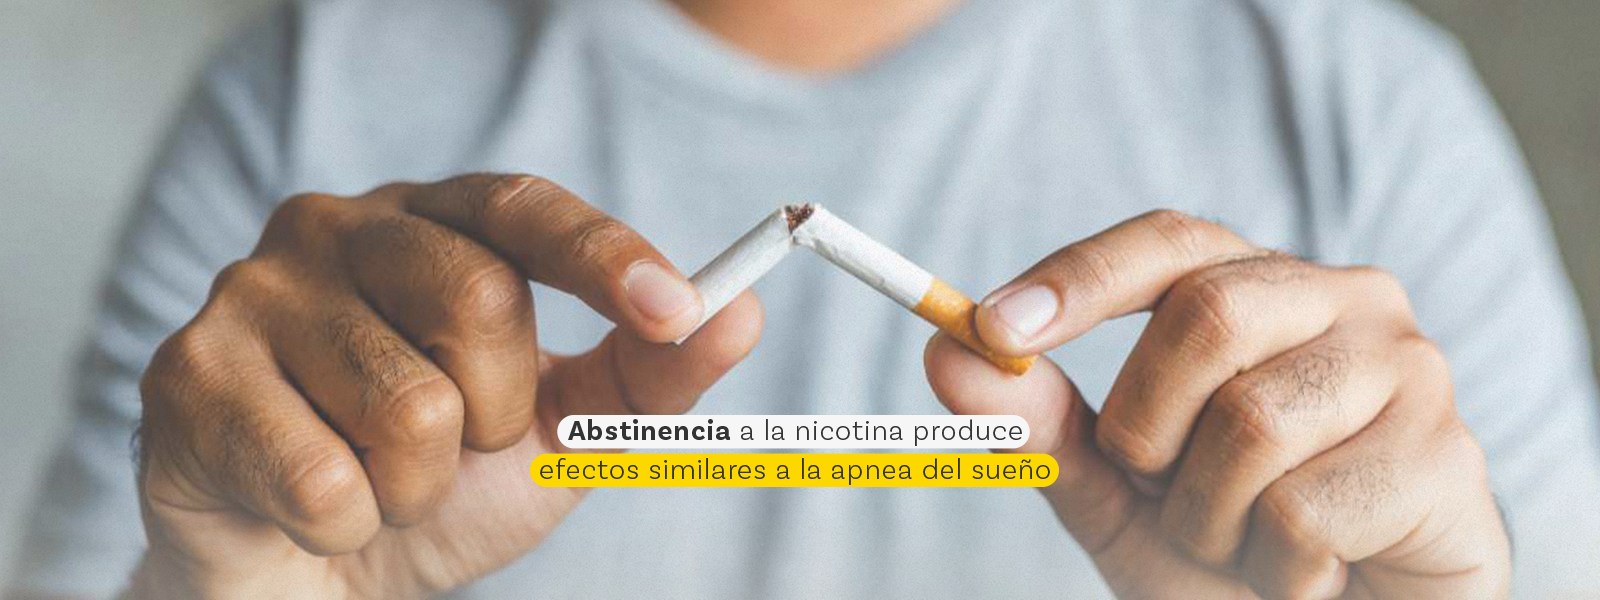 Abstinencia a la nicotina produce efectos similares a la apnea del sueño